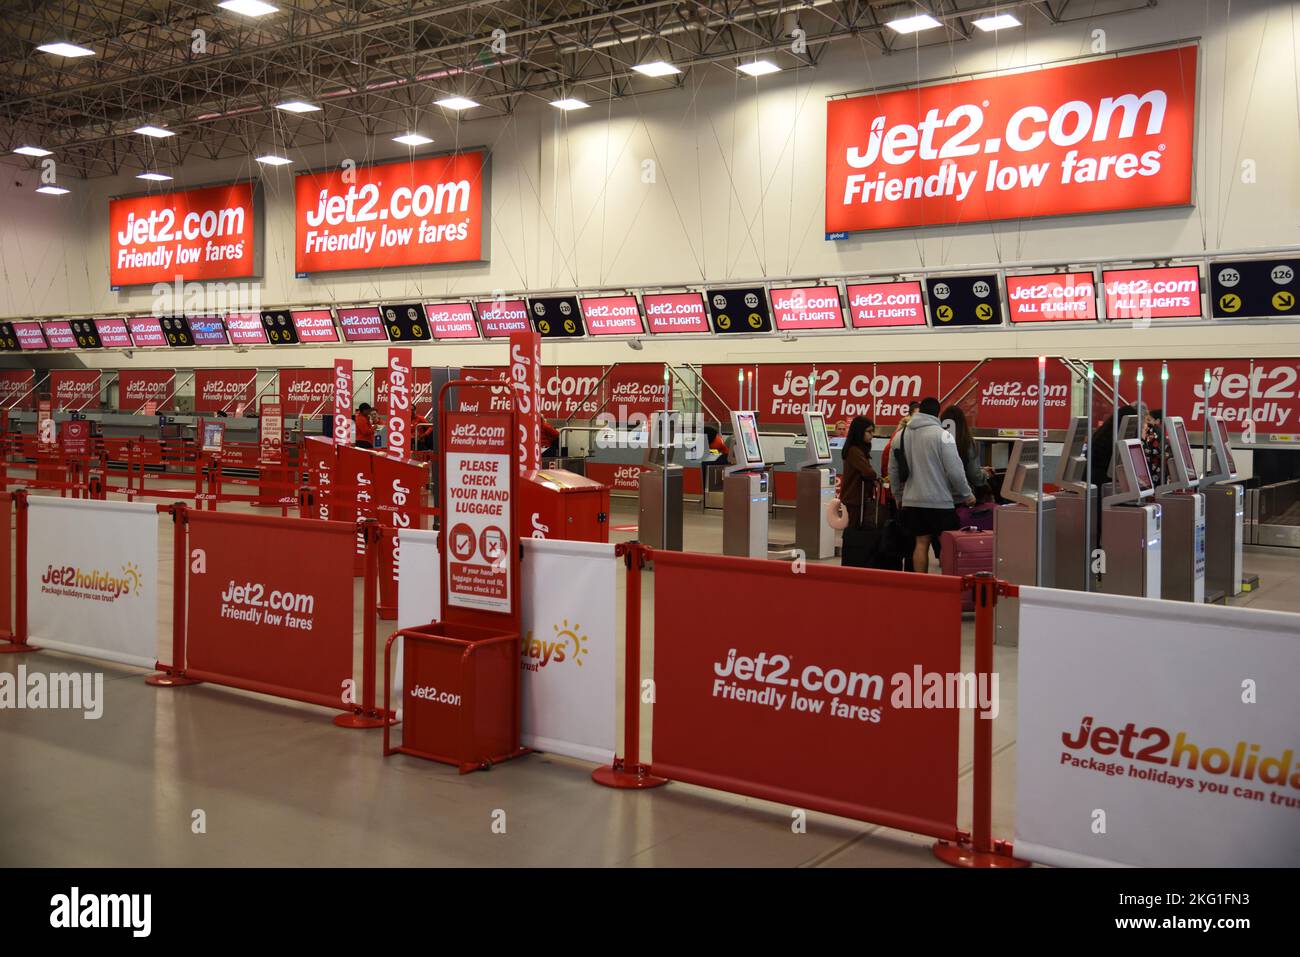 Jet2 Mostrador de facturación de vuelos de bajo coste en el aeropuerto de Birmingham, Inglaterra, Reino Unido Foto de stock